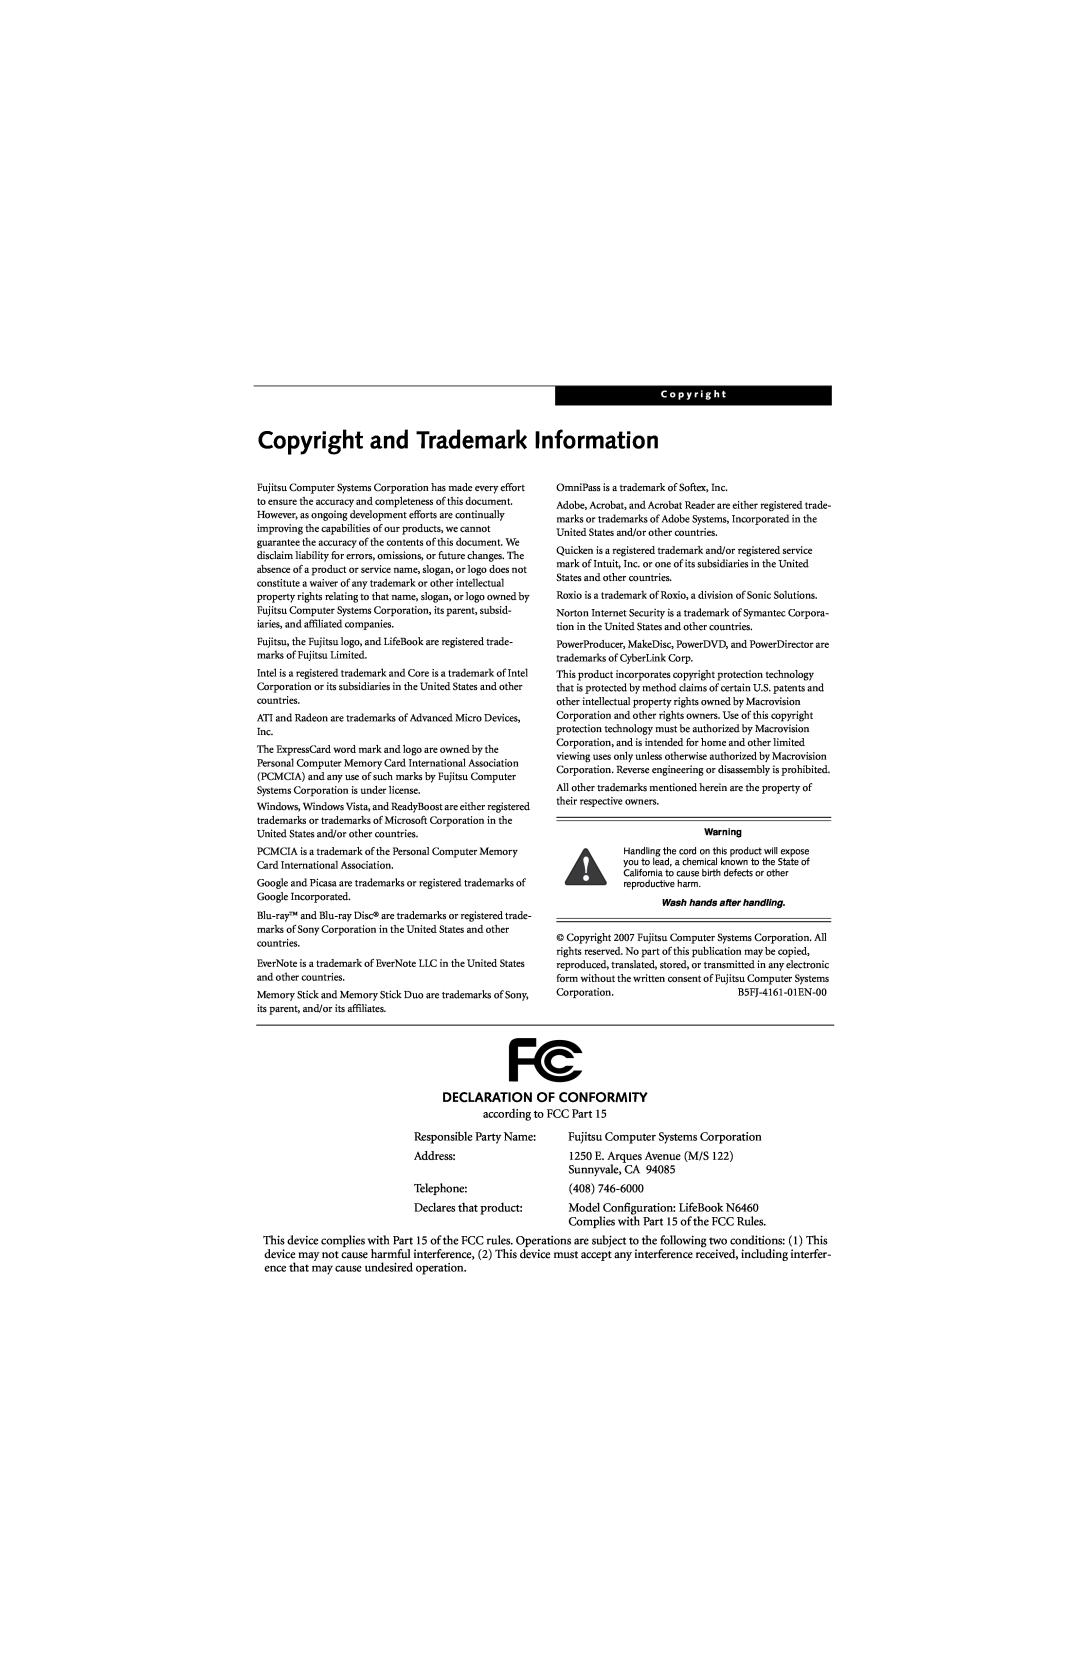 Fujitsu N6460 manual Copyright and Trademark Information, Declaration Of Conformity 